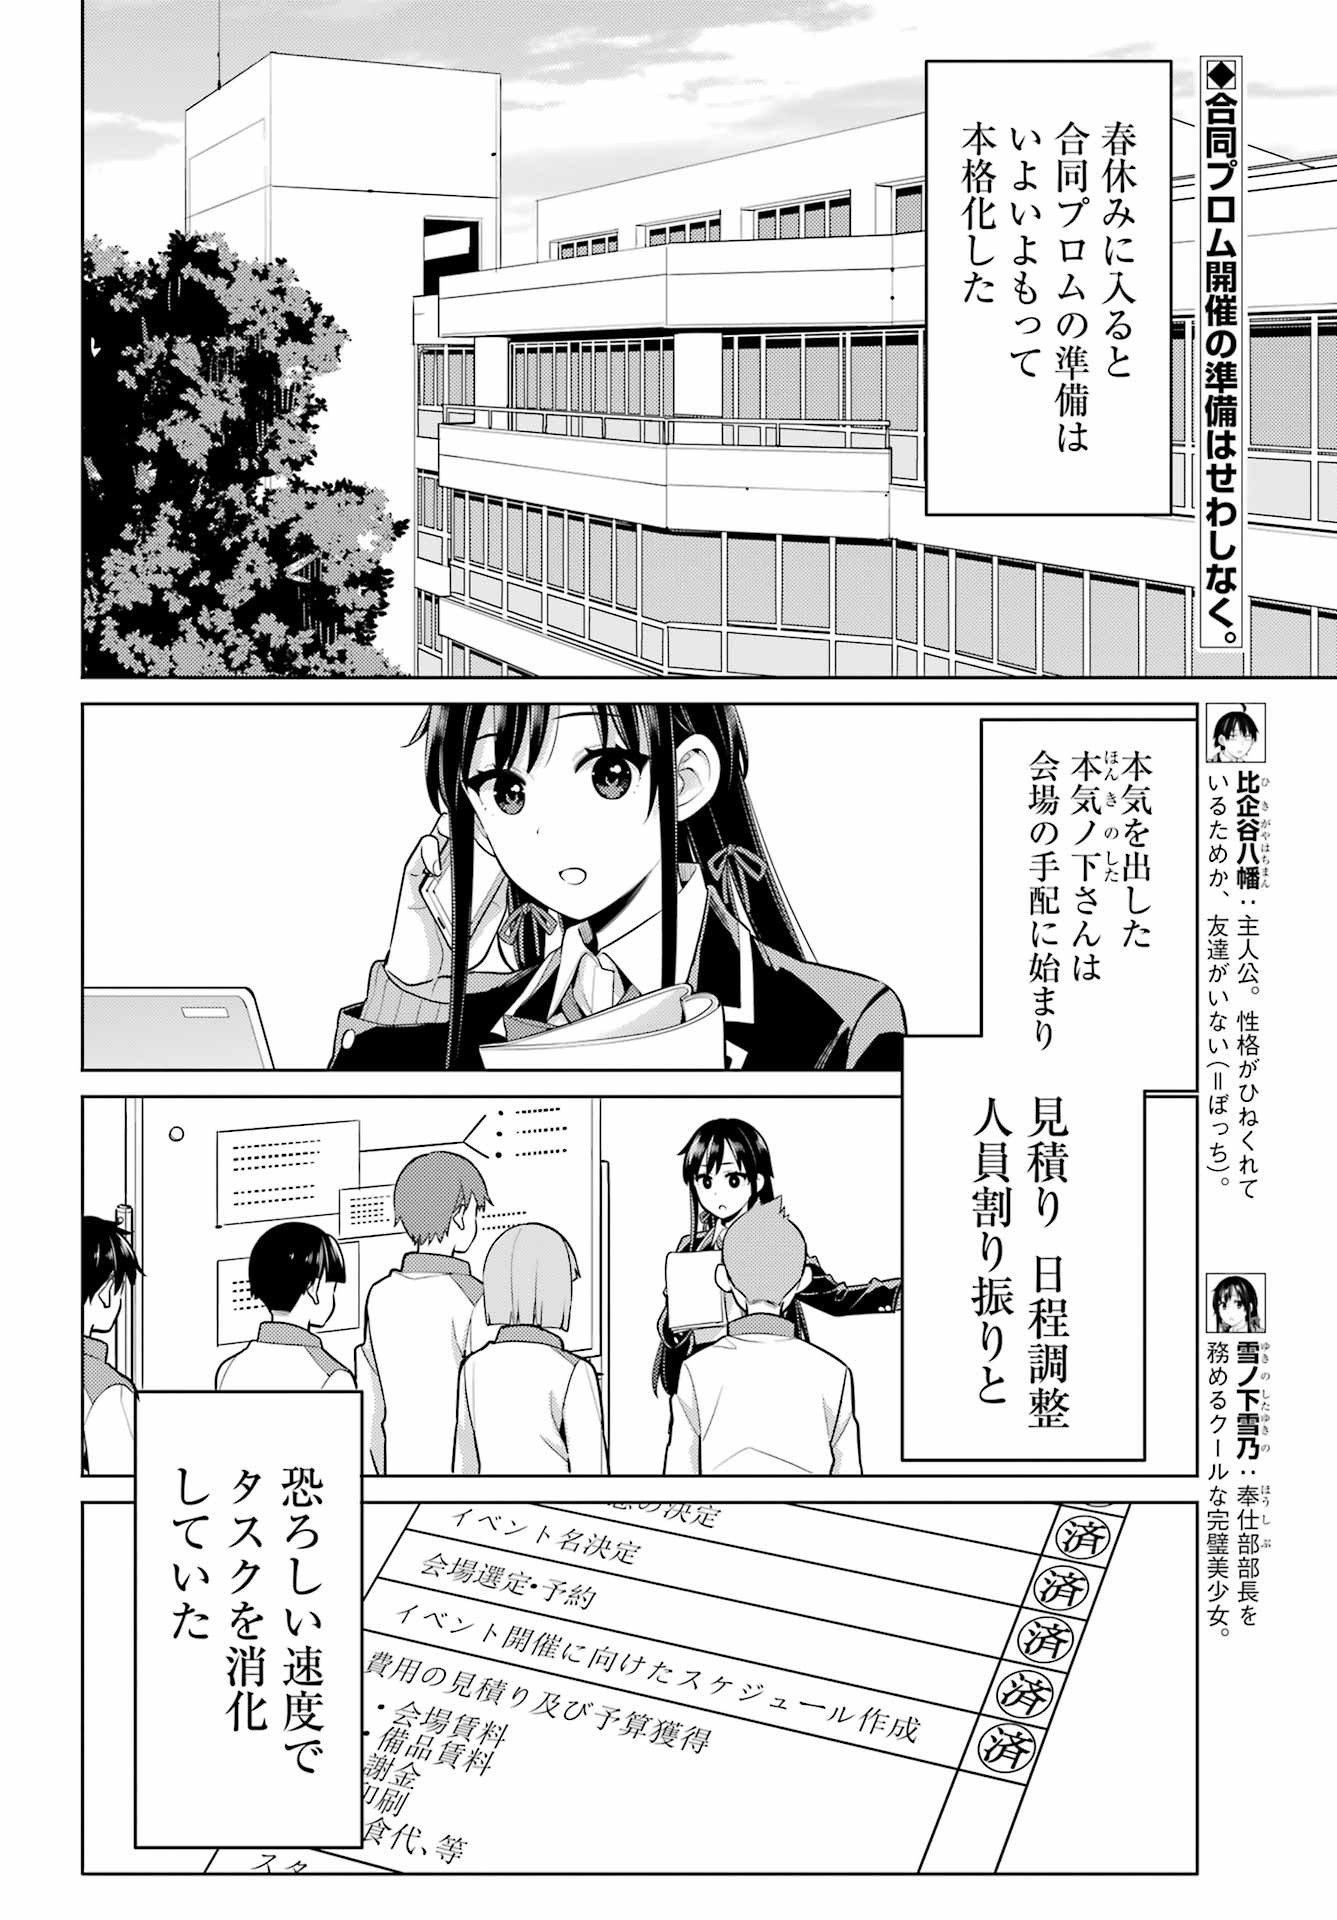 Yahari Ore no Seishun Rabukome wa Machigatte Iru. - Monologue - Chapter 112 - Page 2